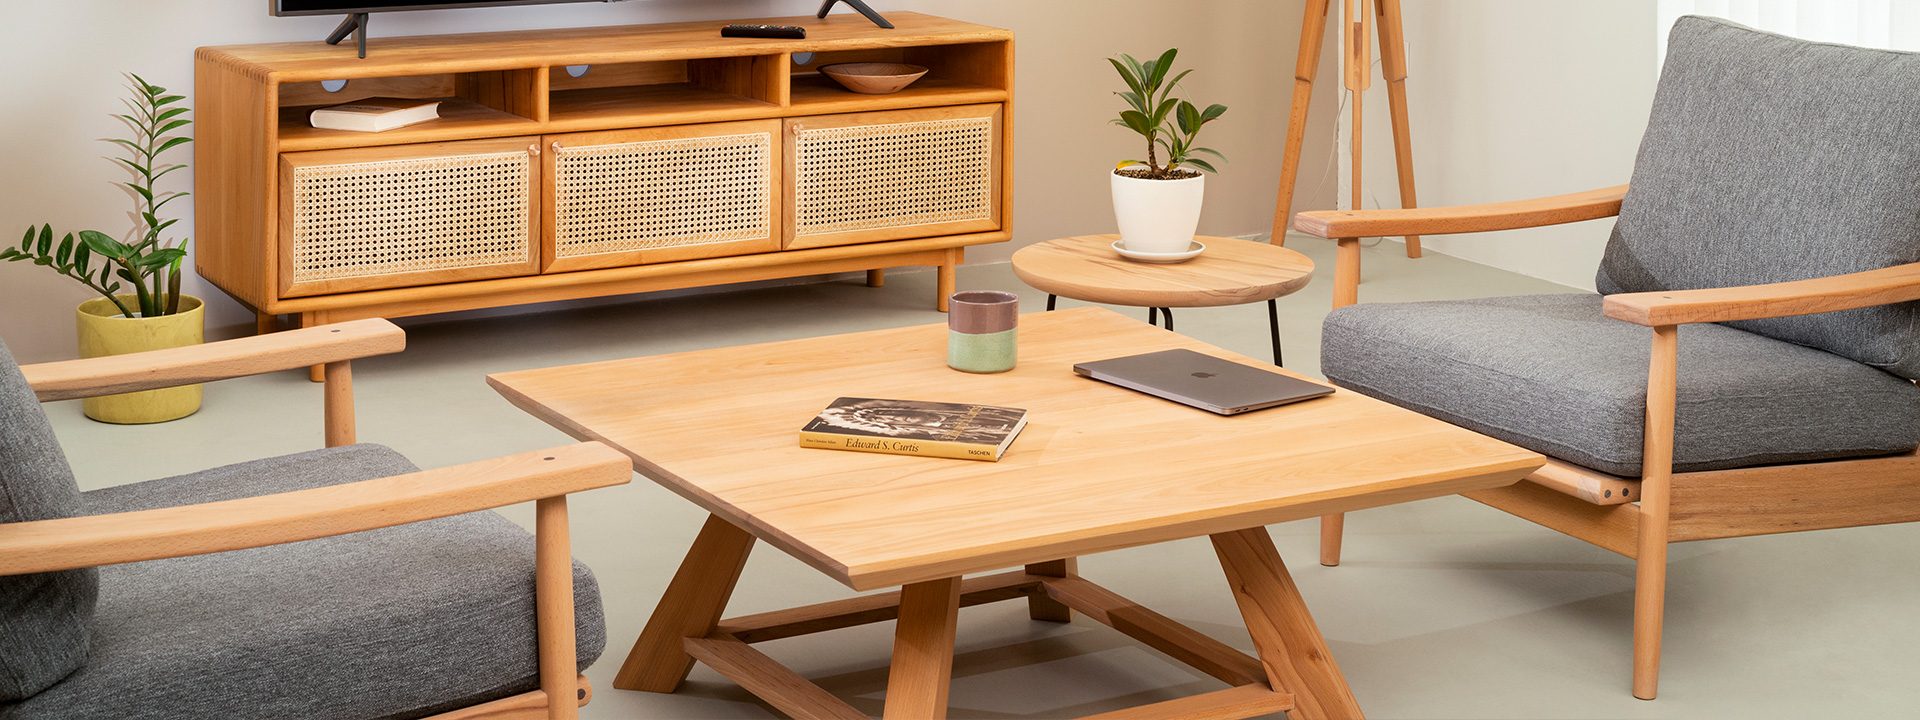 ترکیب زیبایی از میز جلو مبلی کازوکو با مبلمان راحتی لم و همدم را مشاهده می‌کنید.